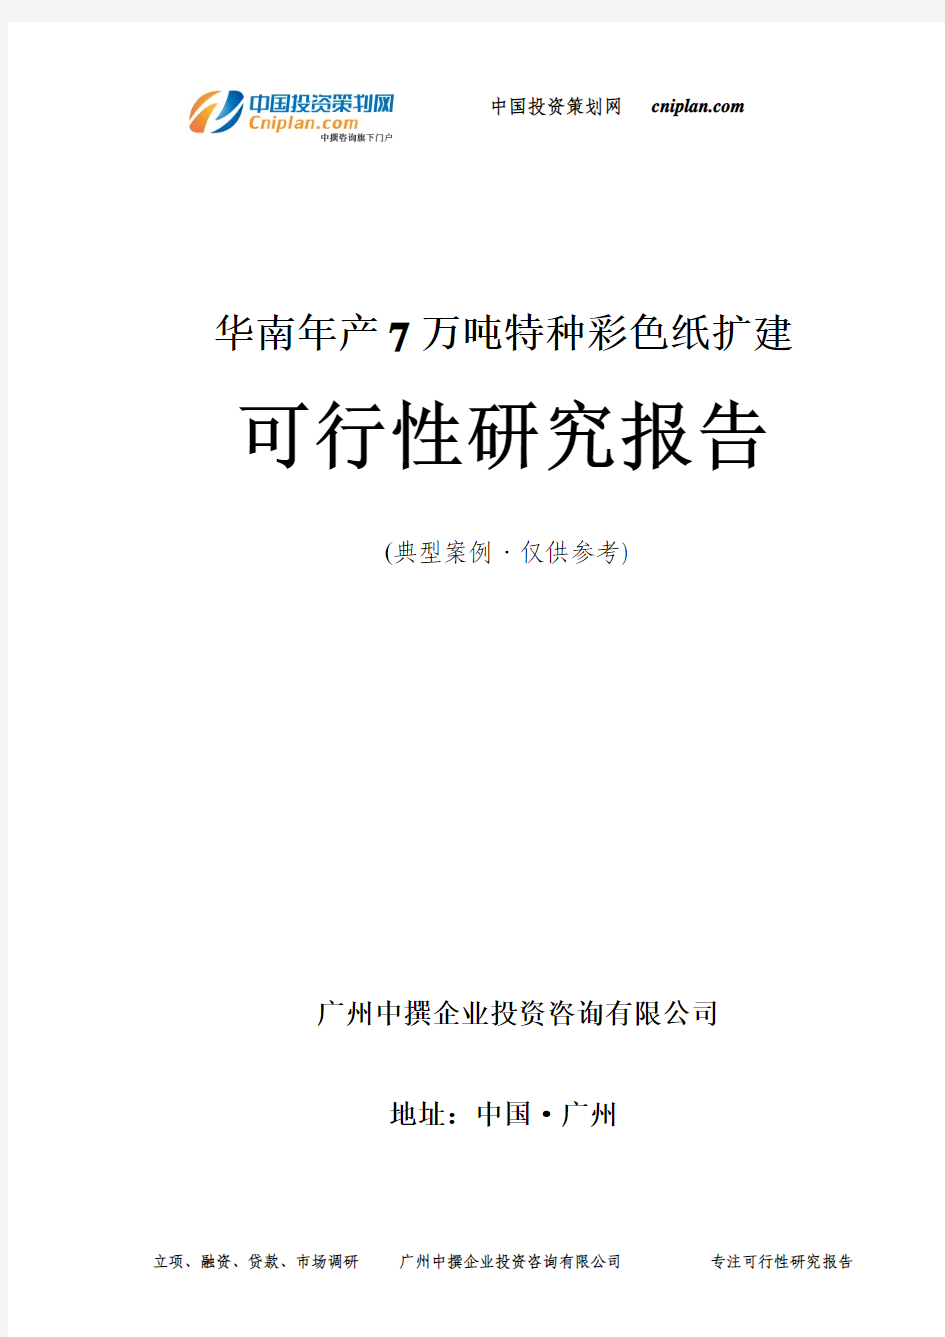 华南年产7万吨特种彩色纸扩建可行性研究报告-广州中撰咨询